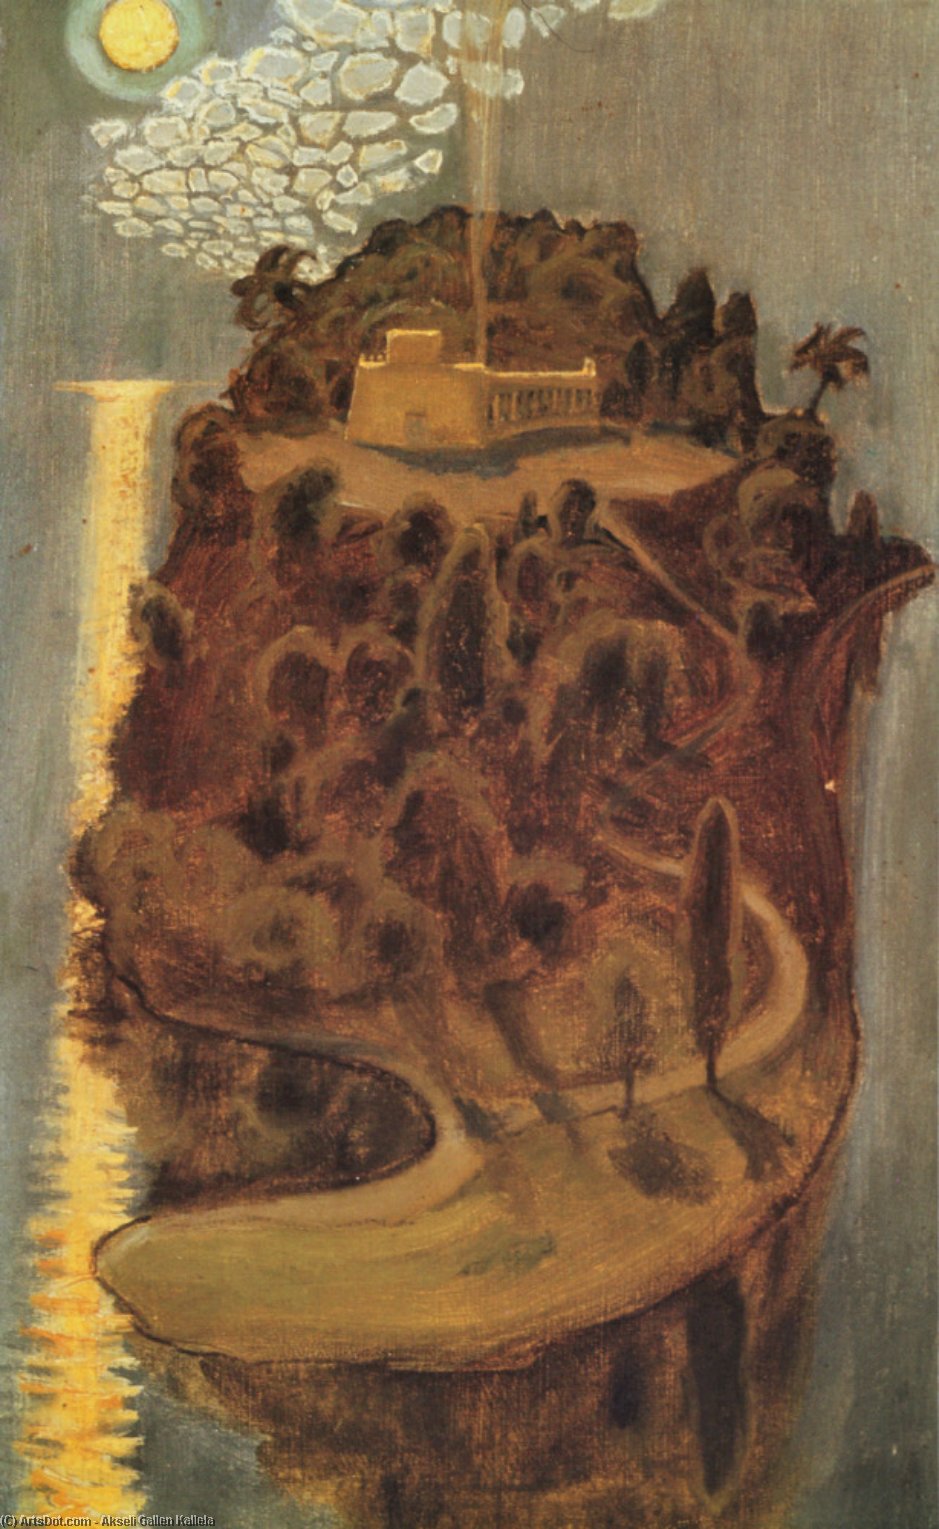 WikiOO.org - Encyclopedia of Fine Arts - Lukisan, Artwork Akseli Gallen Kallela - Island of dreams